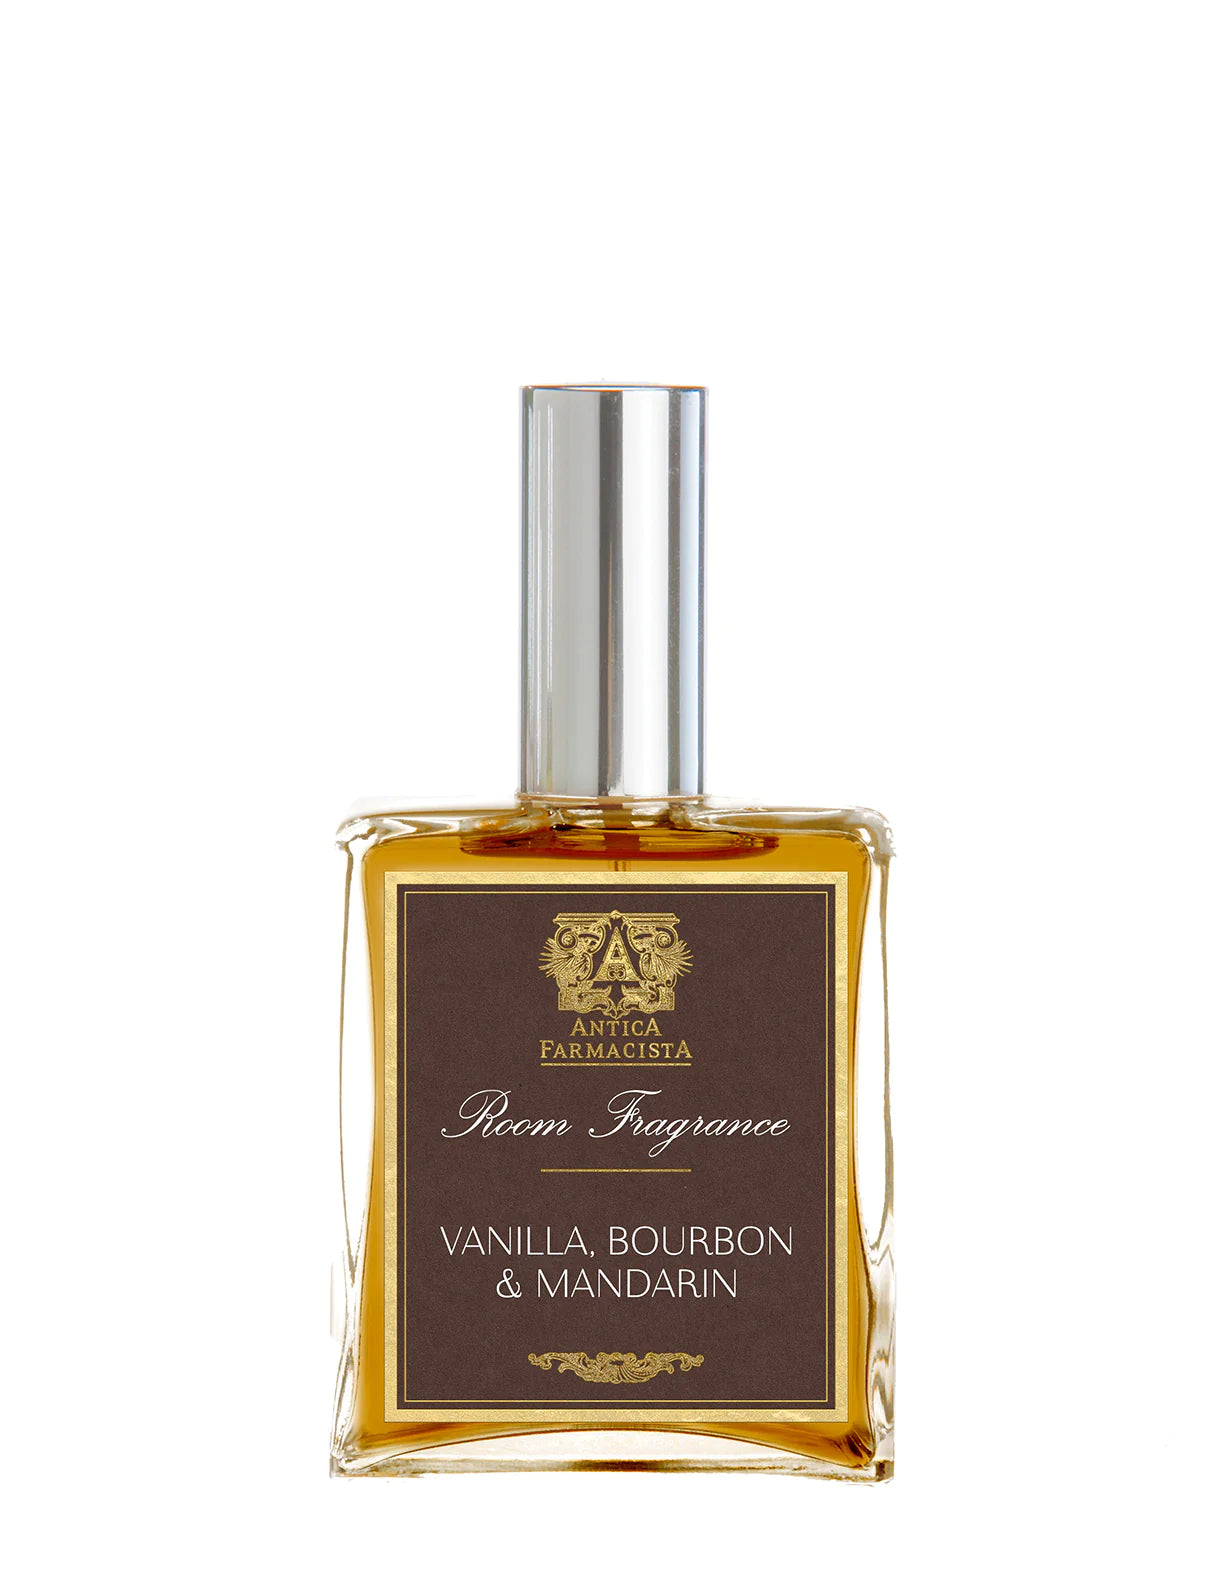 Vanilla, Bourbon & Mandarin Room Fragrance